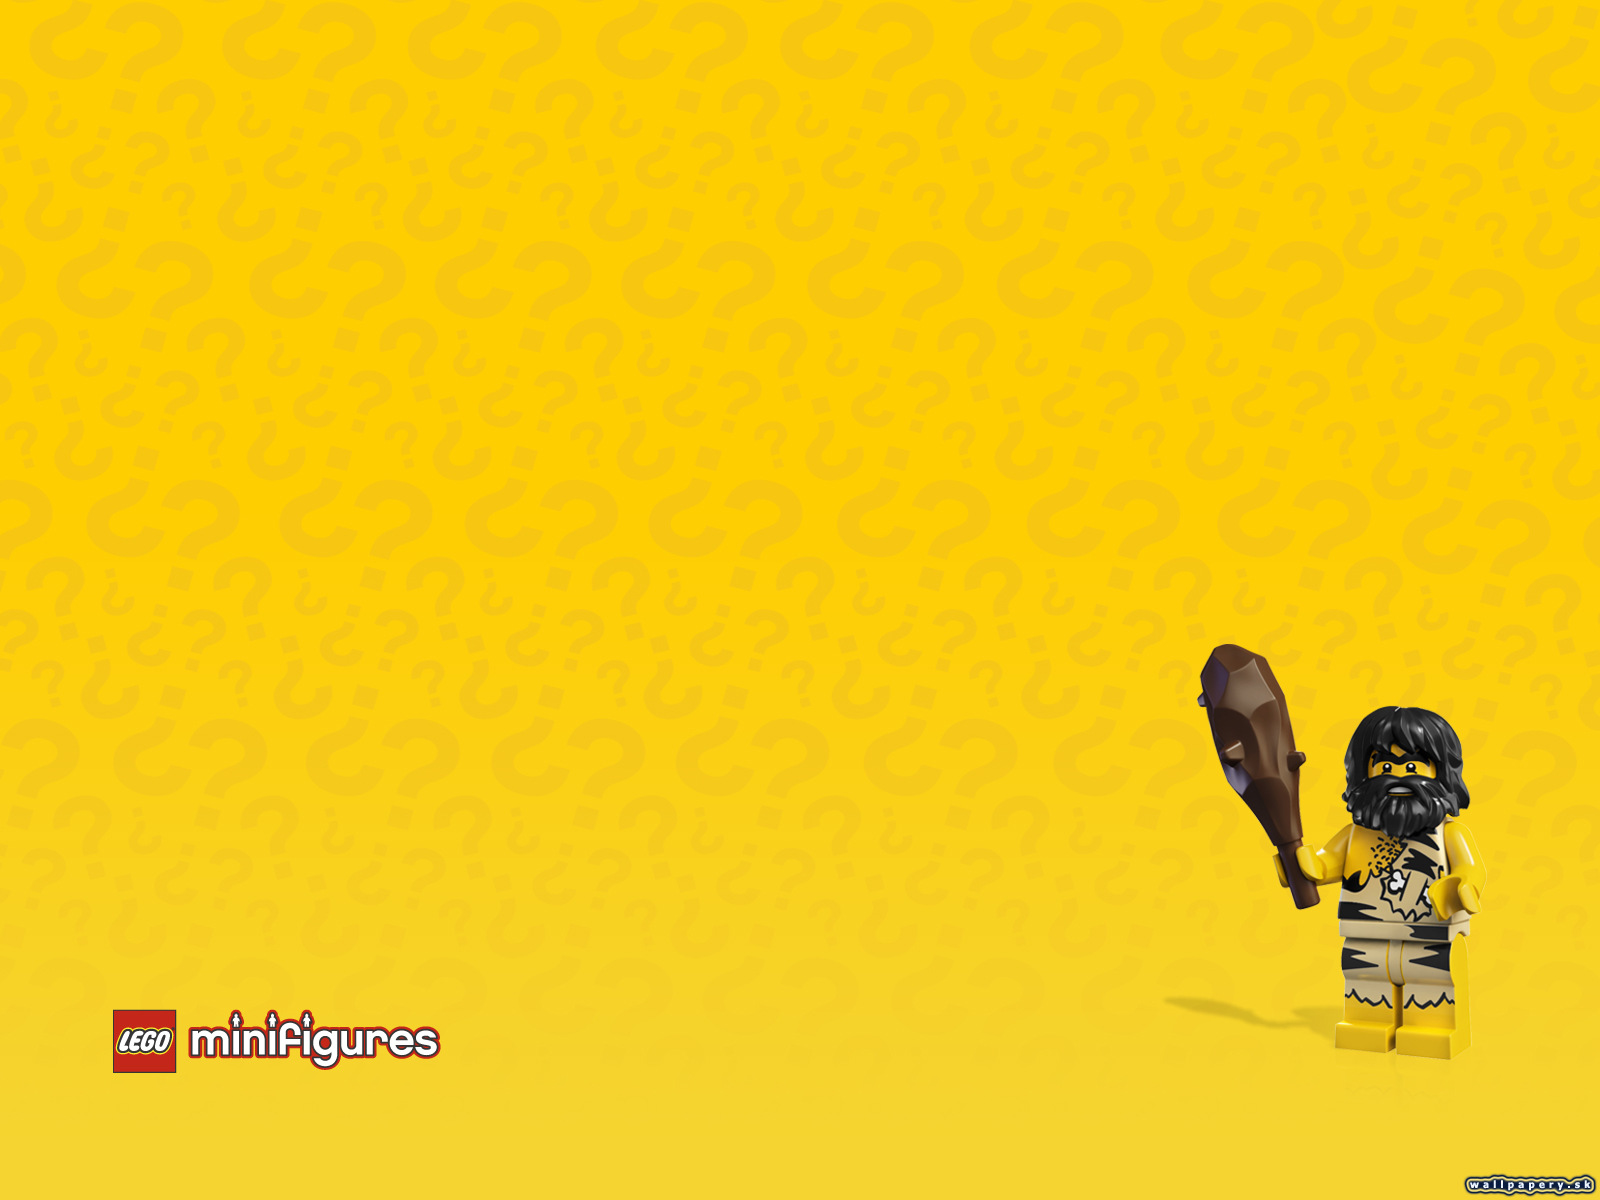 LEGO Minifigures Online - wallpaper 13